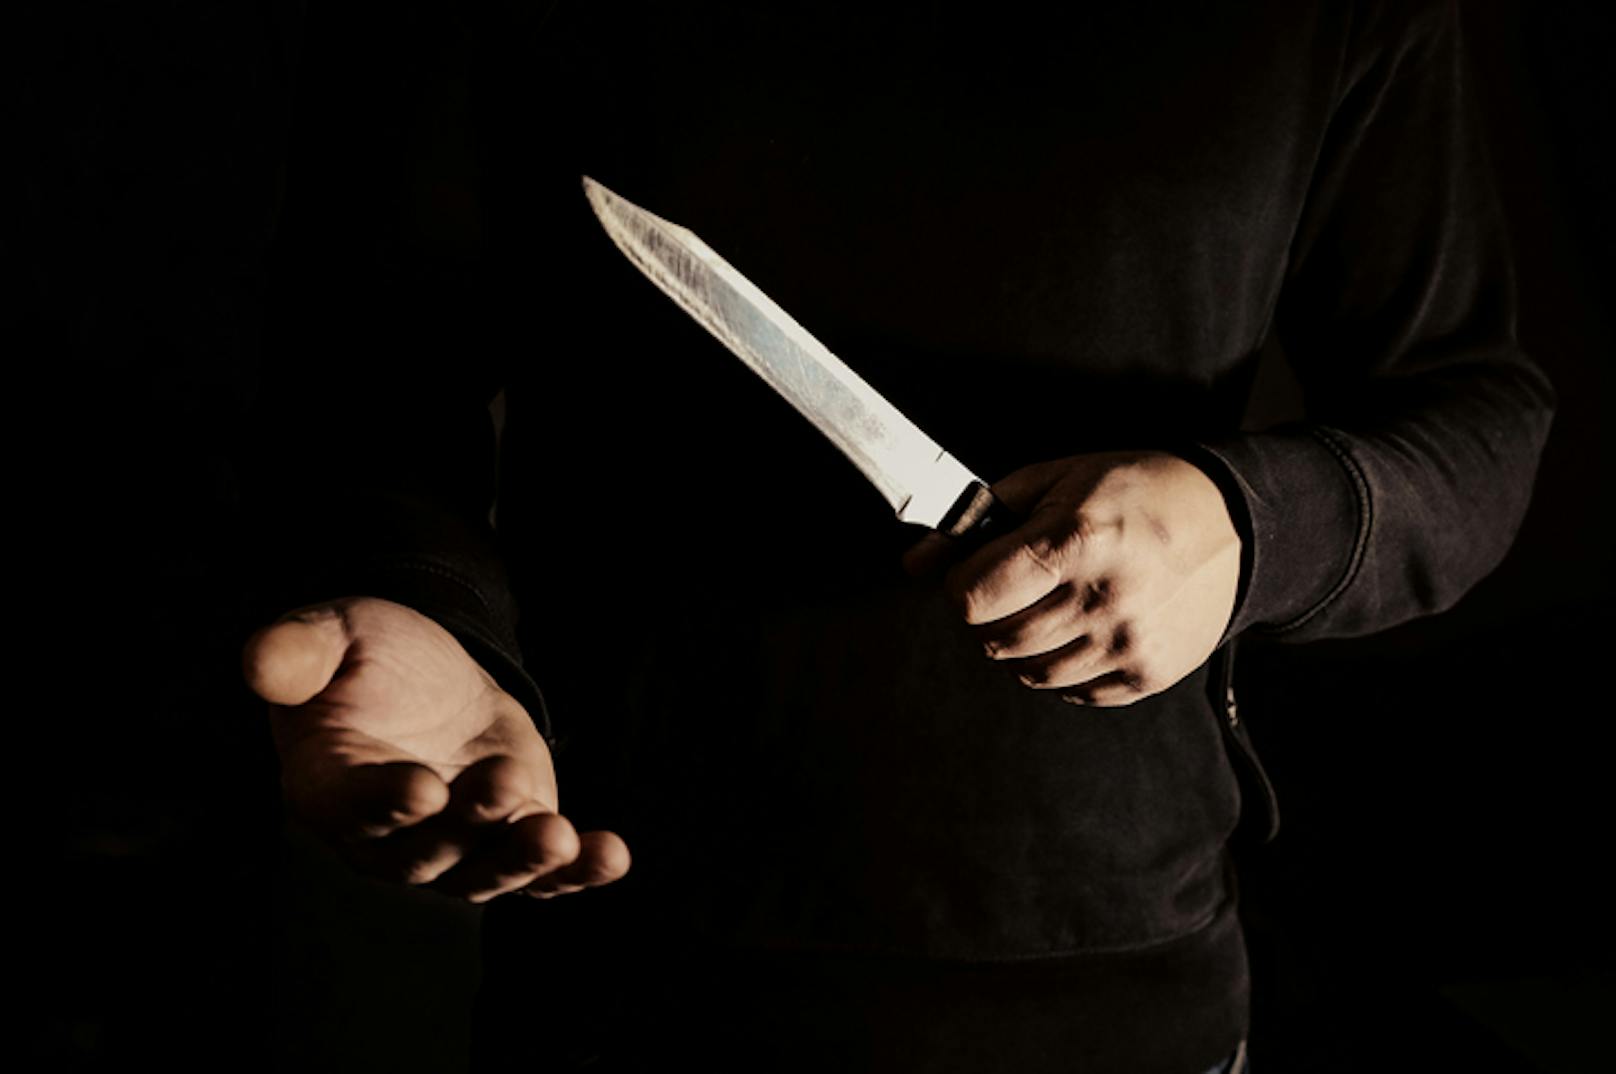 Der dunkel bekleidete Täter forderte mit einem Messer Geld. (Symbolbild).